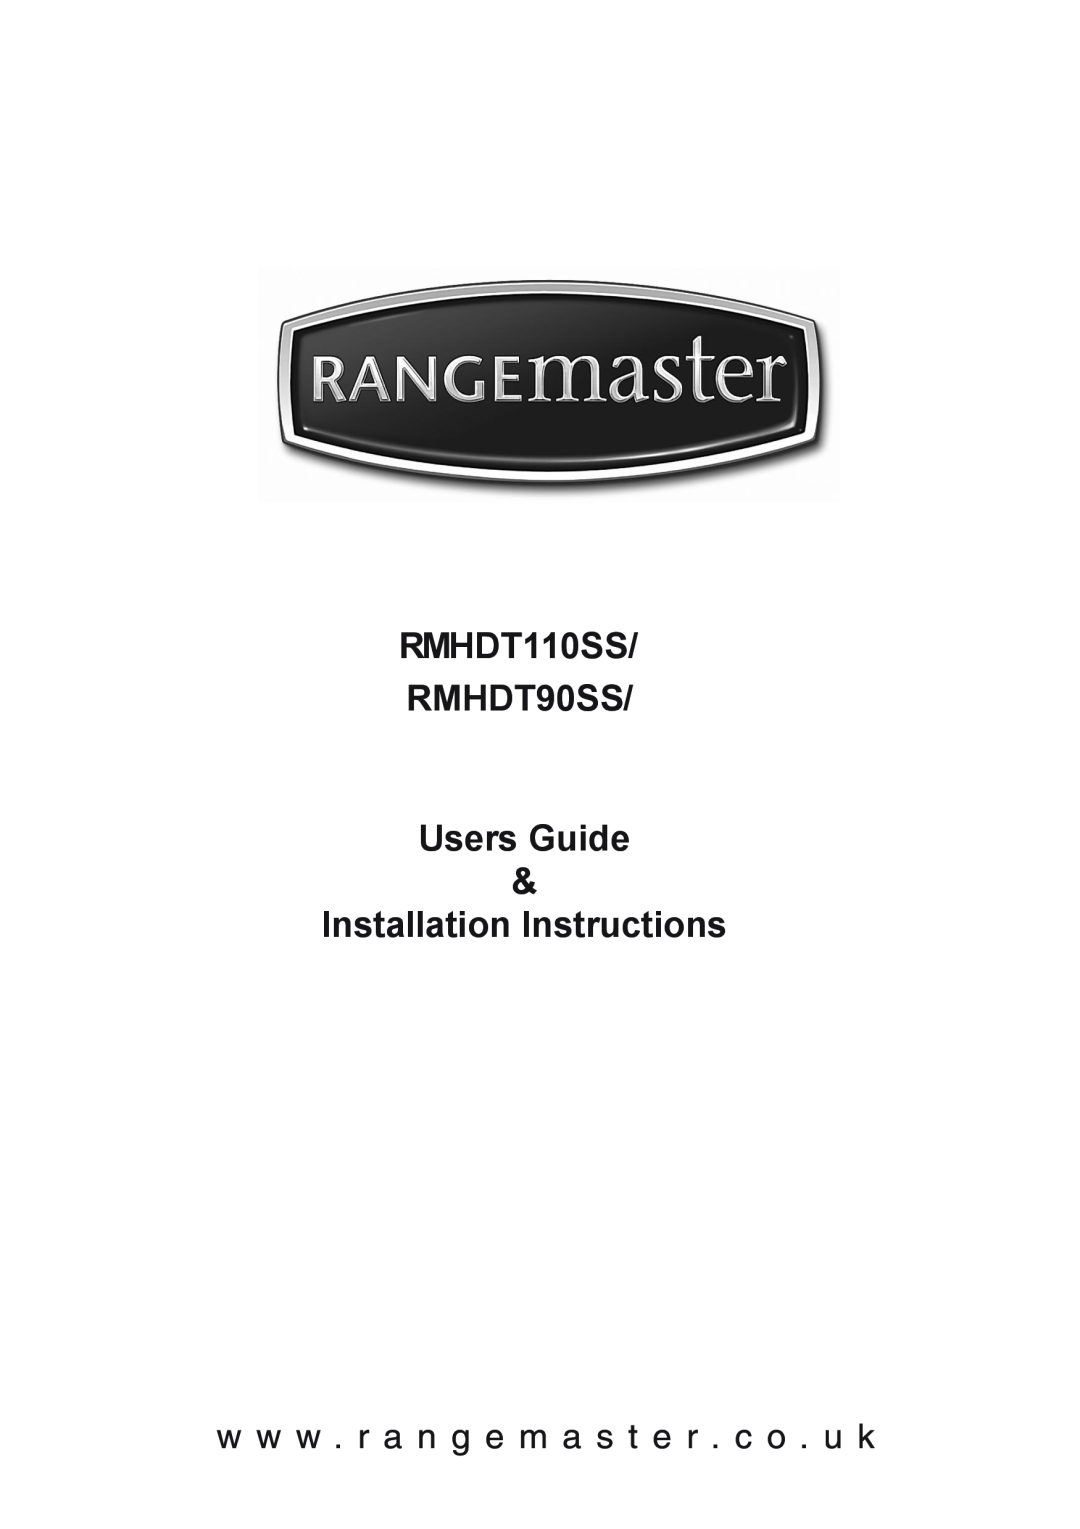 Rangemaster installation instructions RMHDT110SS RMHDT90SS Users Guide, Installation Instructions 